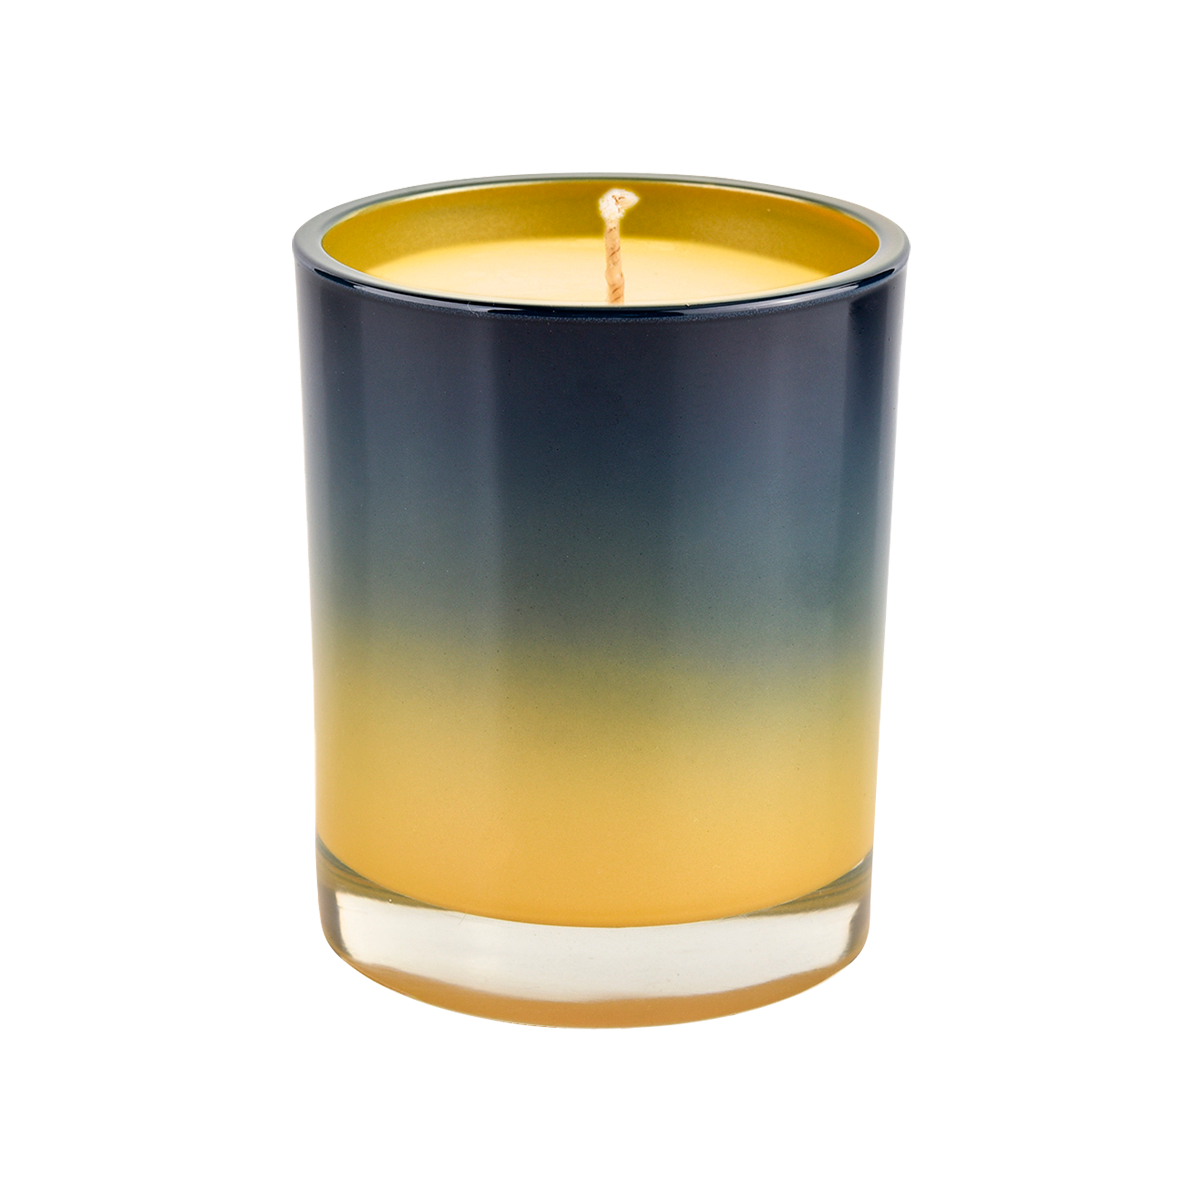 Kerzengefäße aus Glas mit gelbem Farbverlauf und schwarzer Dekoration, 10 oz